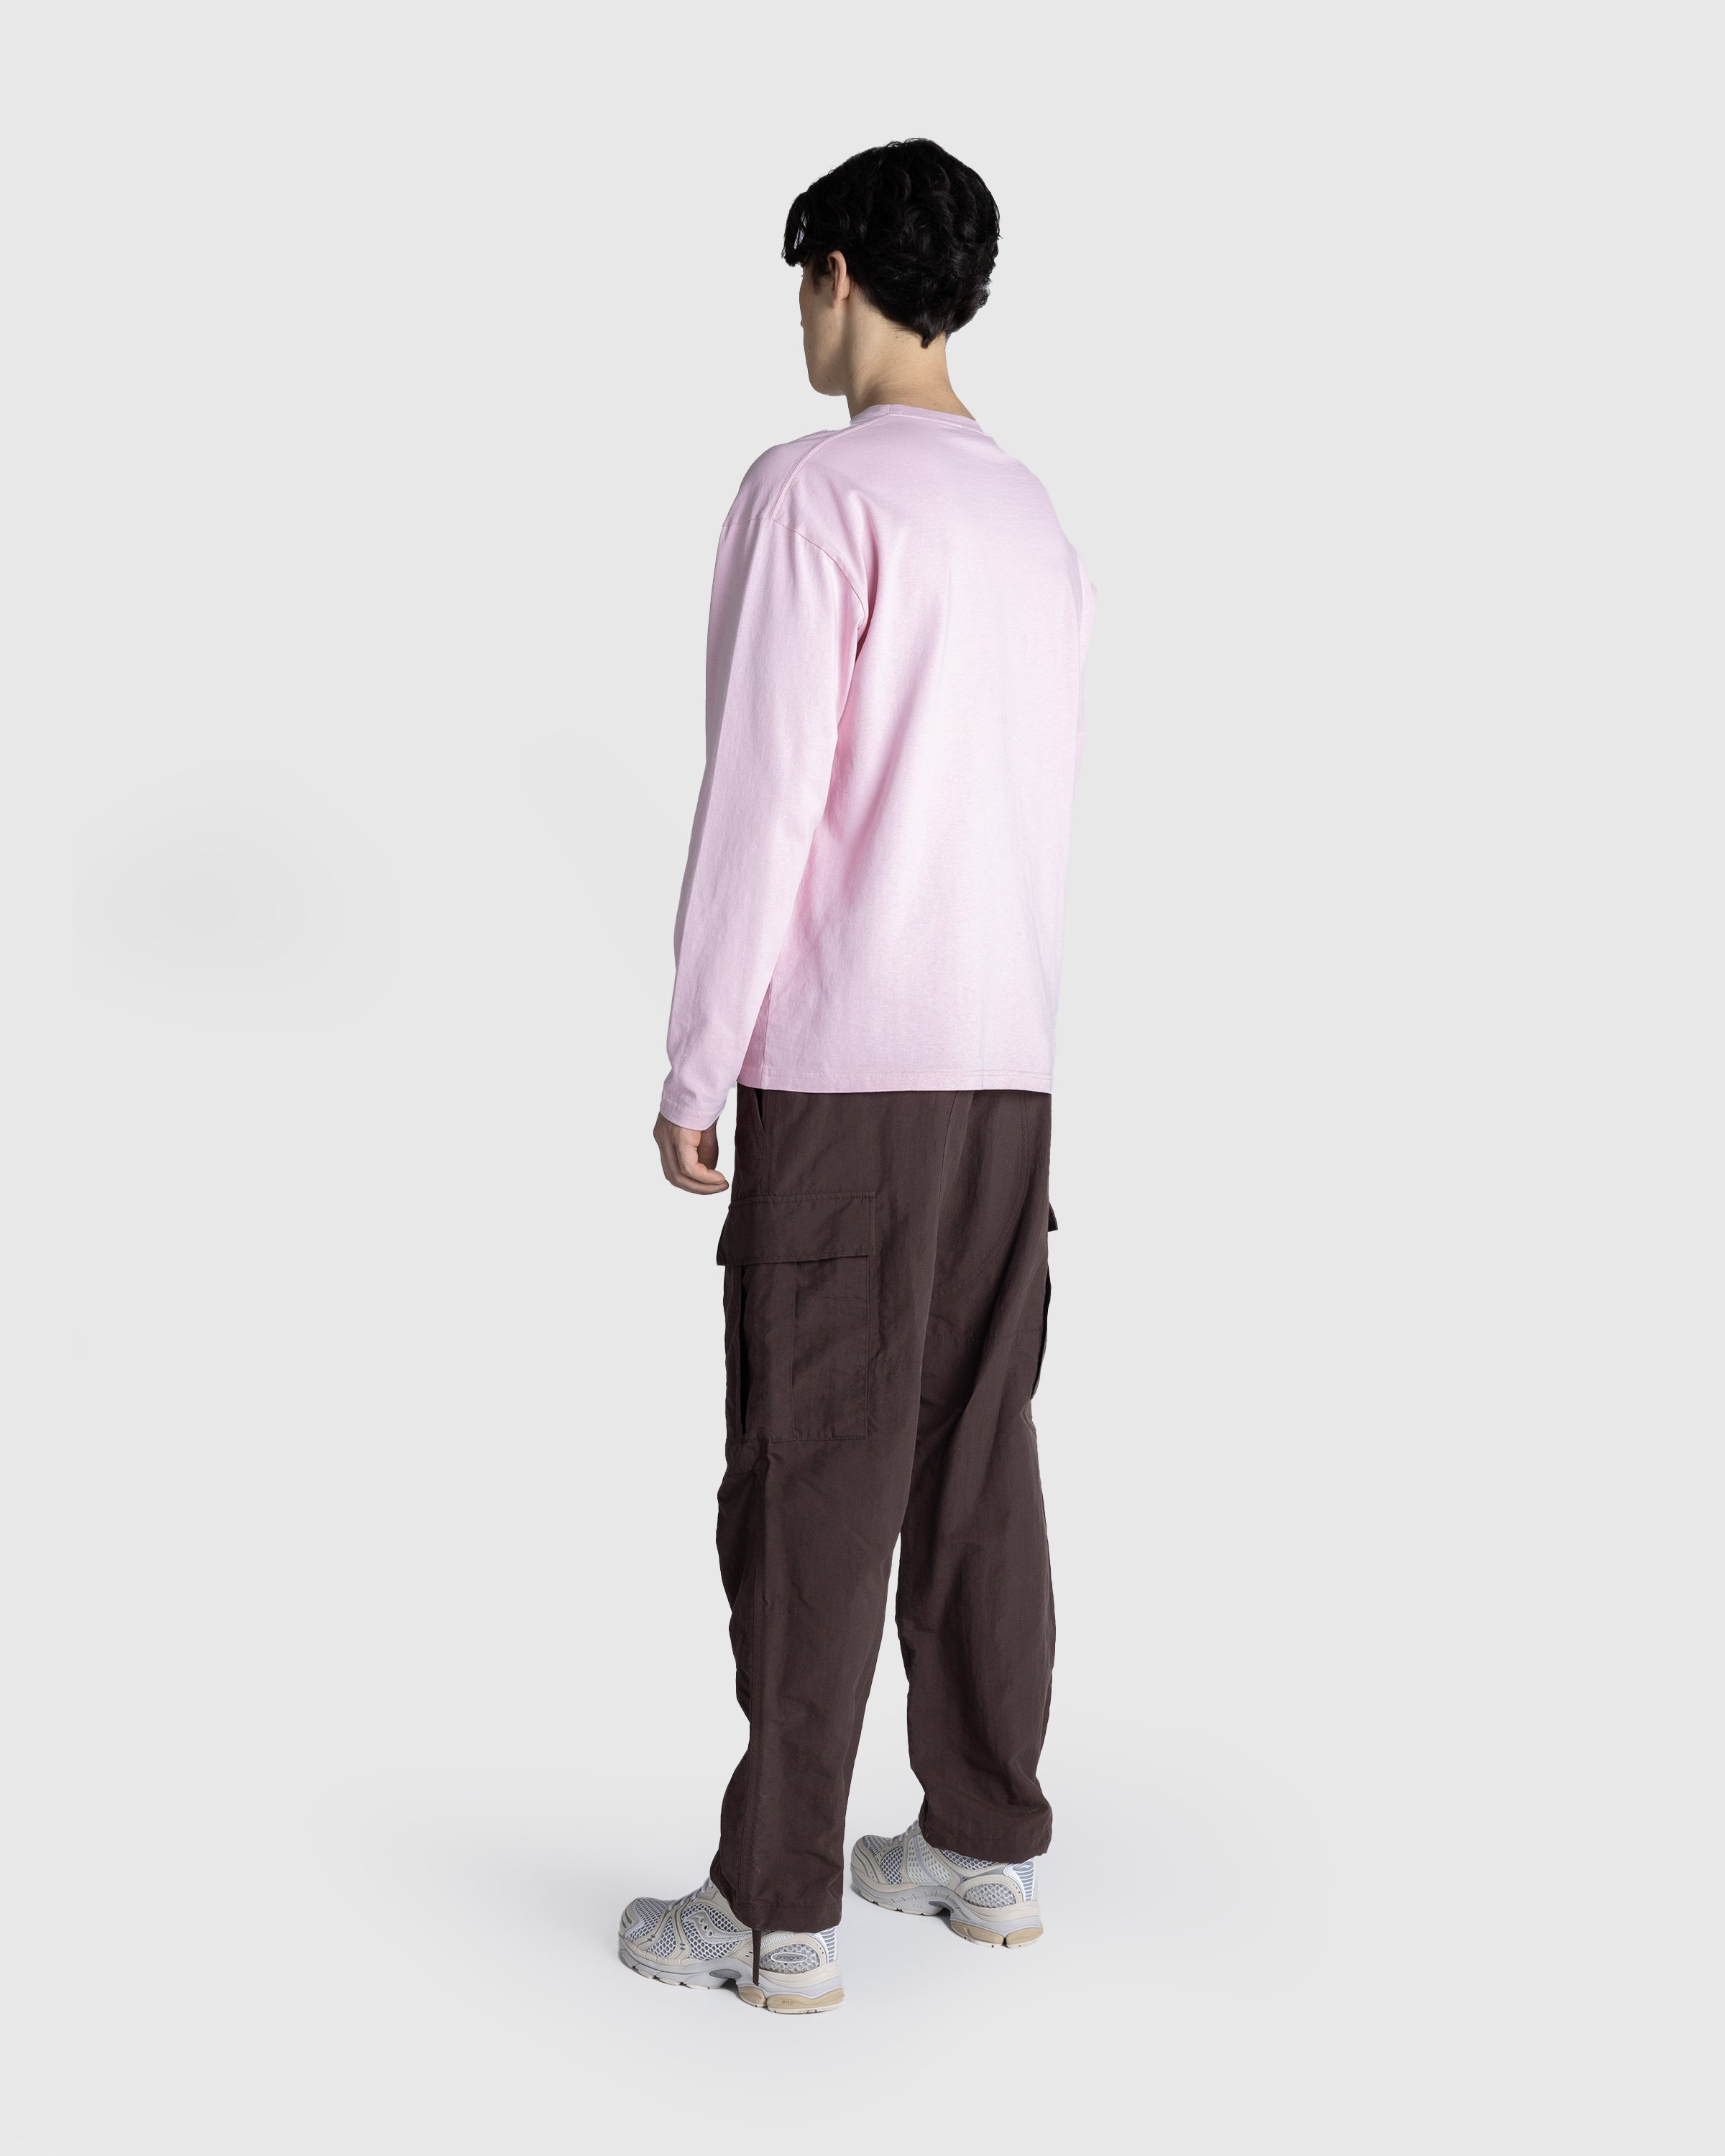 Beigel Bake x Highsnobiety - Pink Long Sleeves Tee - Clothing -  - Image 5